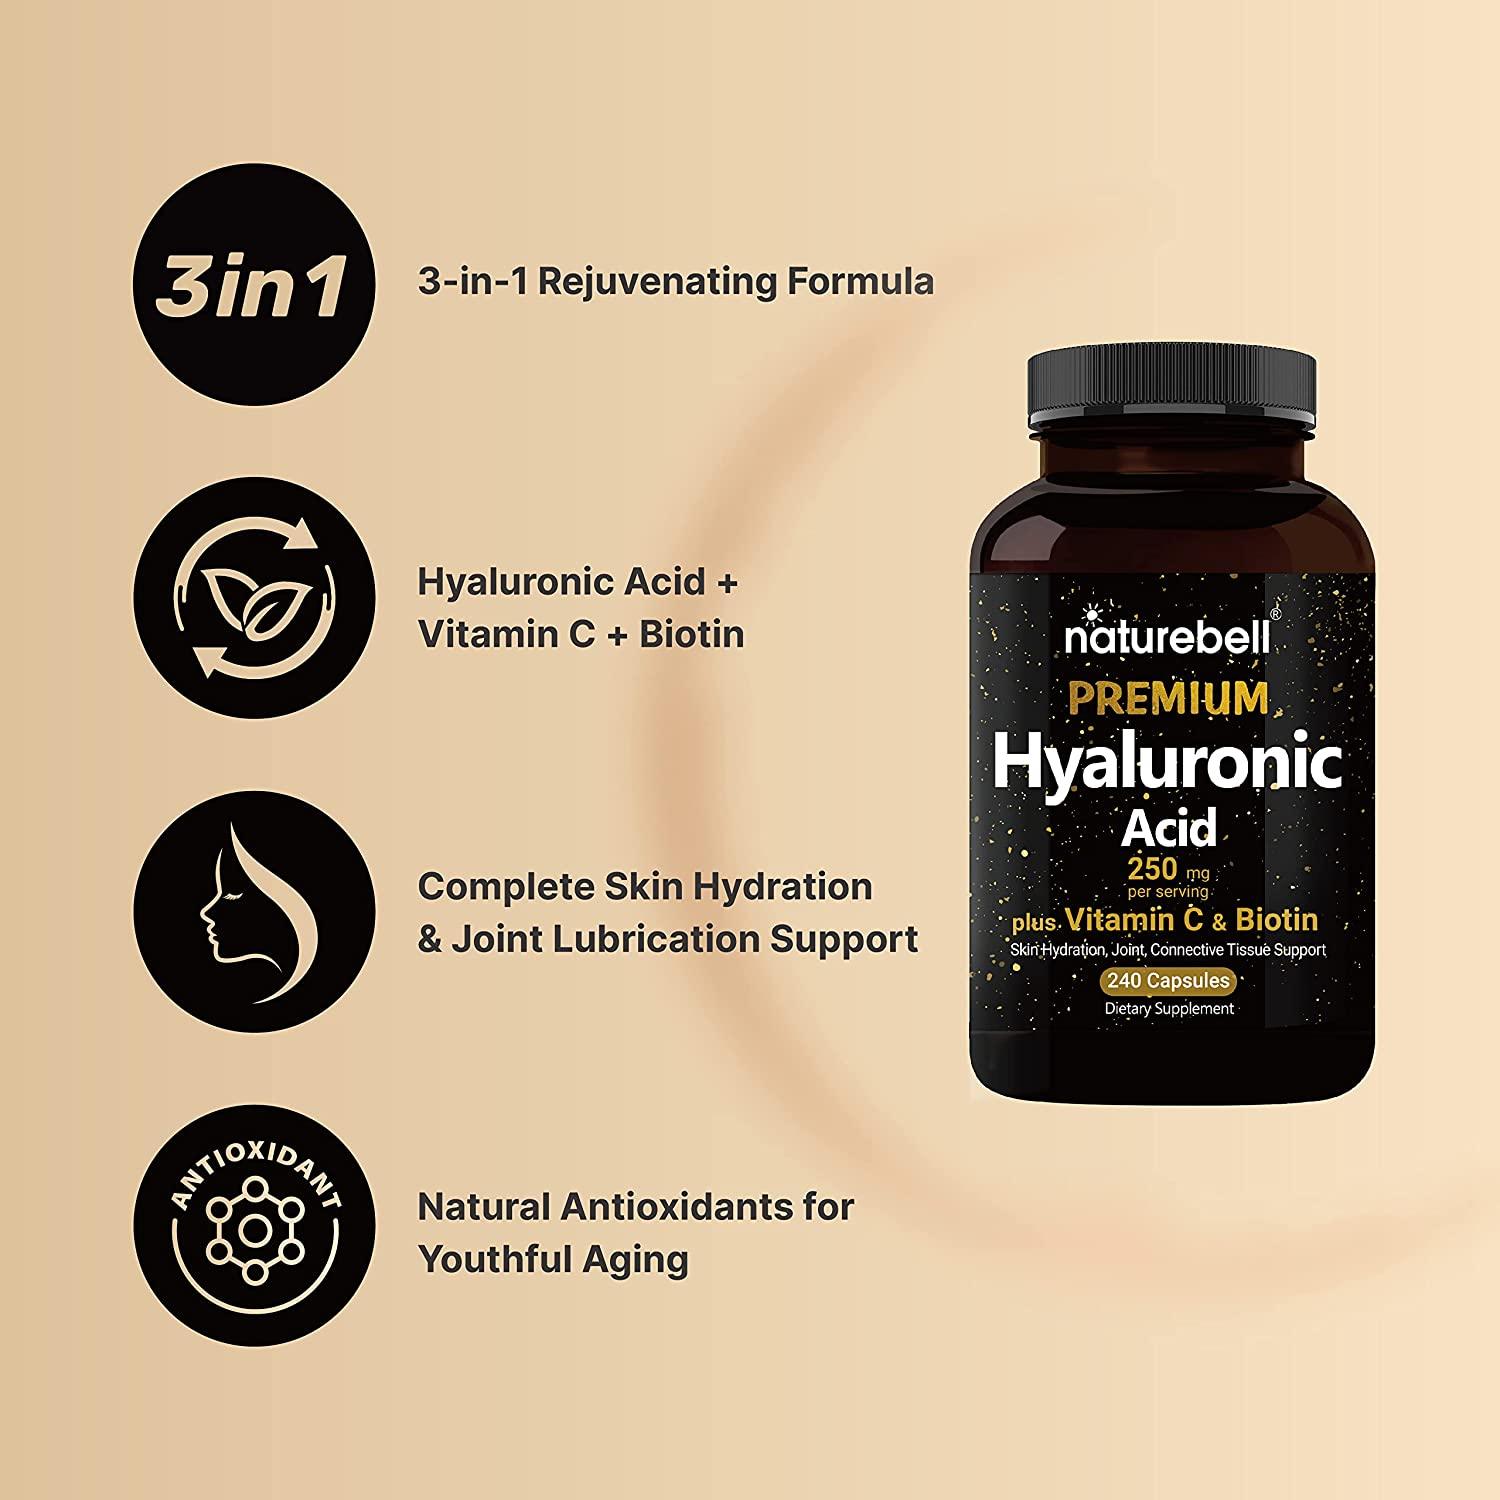 Acide Hyaluronique 250mg plus Vitamine C & Biotine - mondialpharma.com